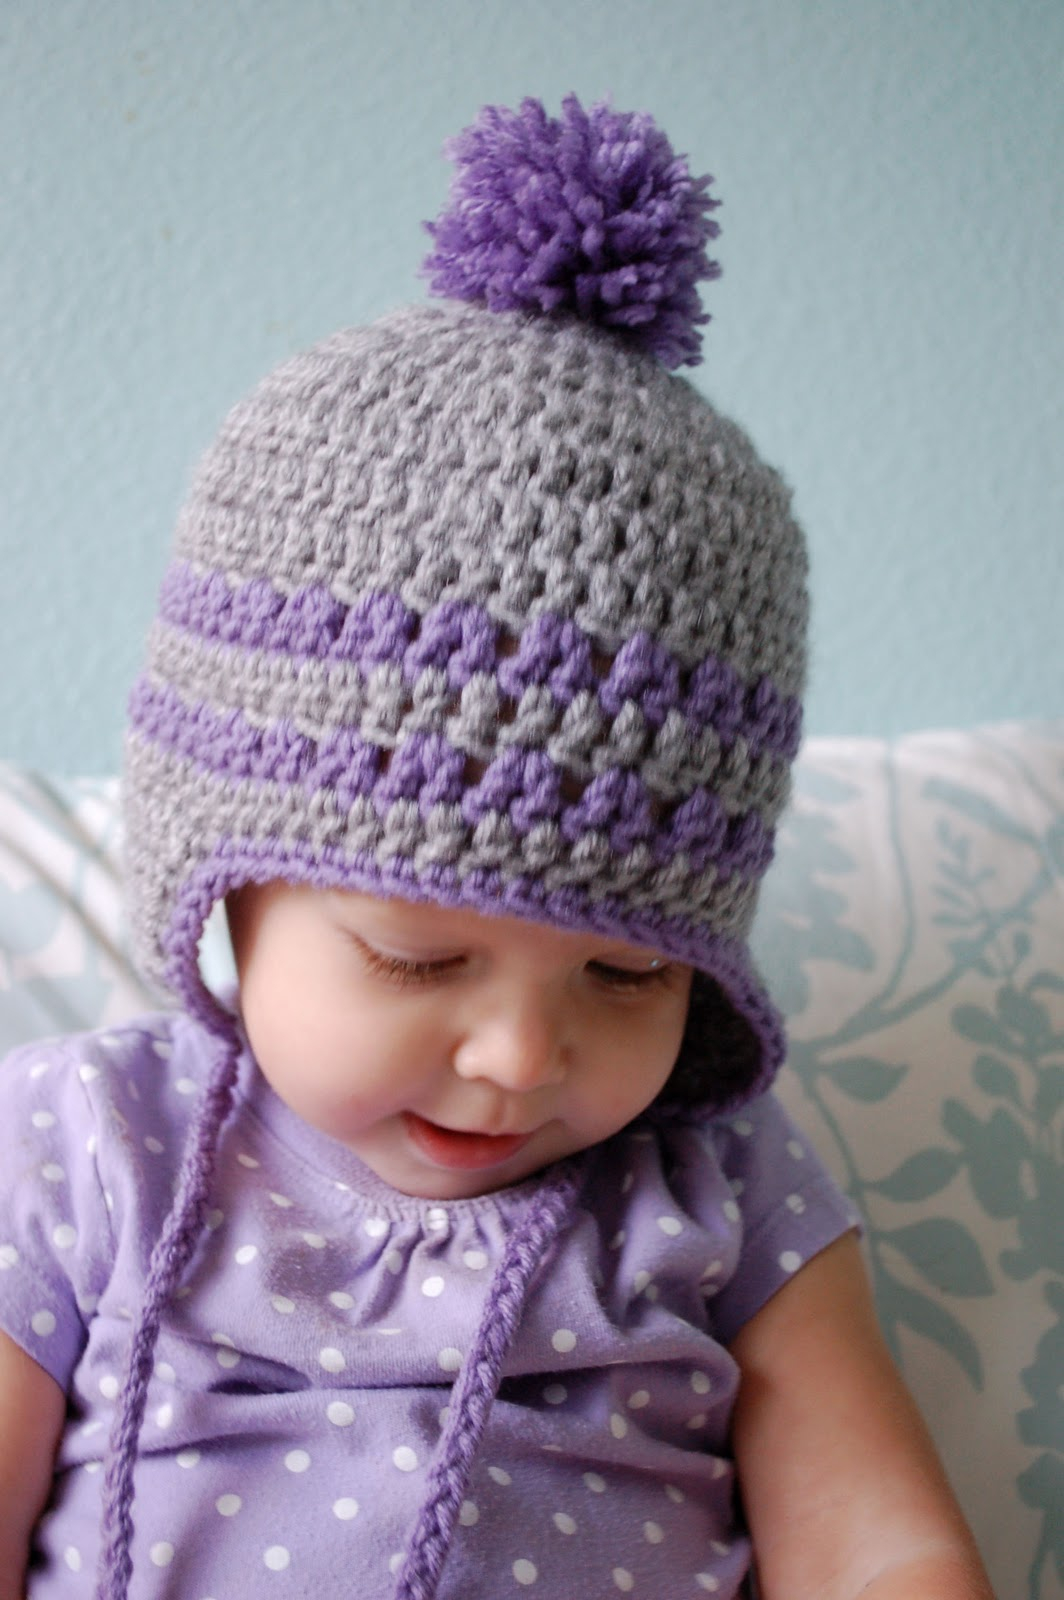 Baby Earflap Hat Crochet Pattern Free Alli Crafts Free Pattern Earflap Hat 9 12 Months